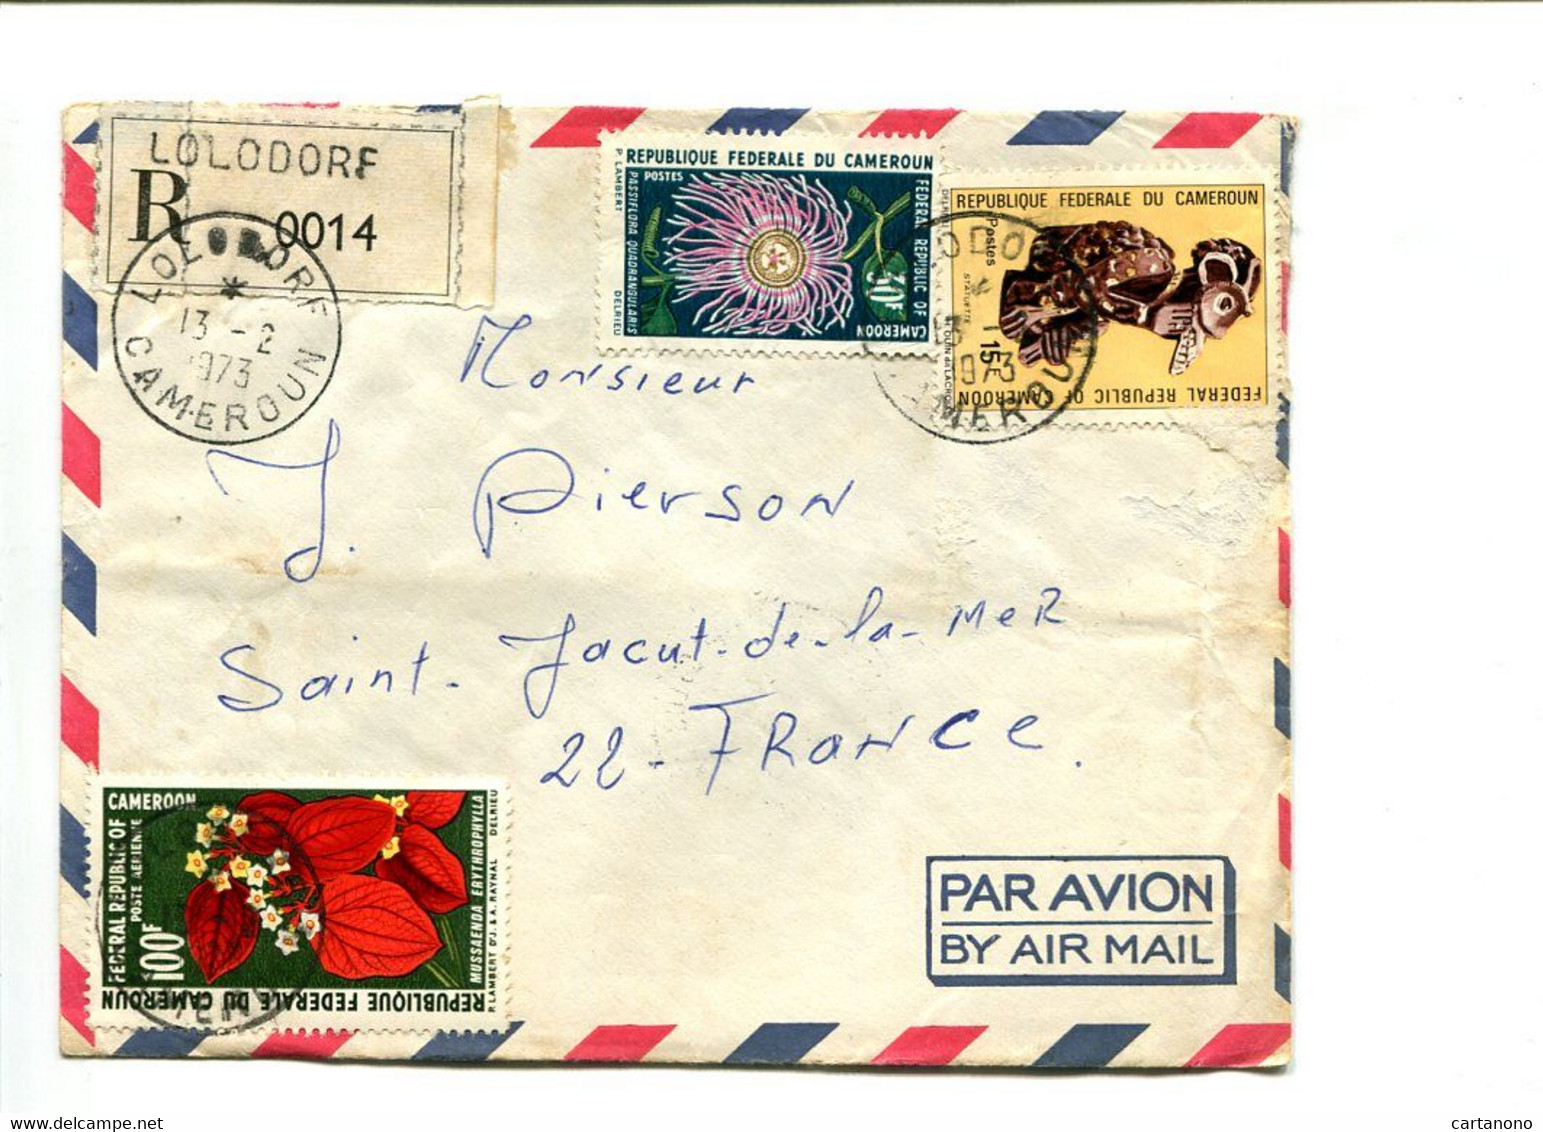 CAMEROUN Lolodore 1973 -  Affranchissement Sur Lettre Recommandée Par Avion - Fleurs - Cameroon (1960-...)